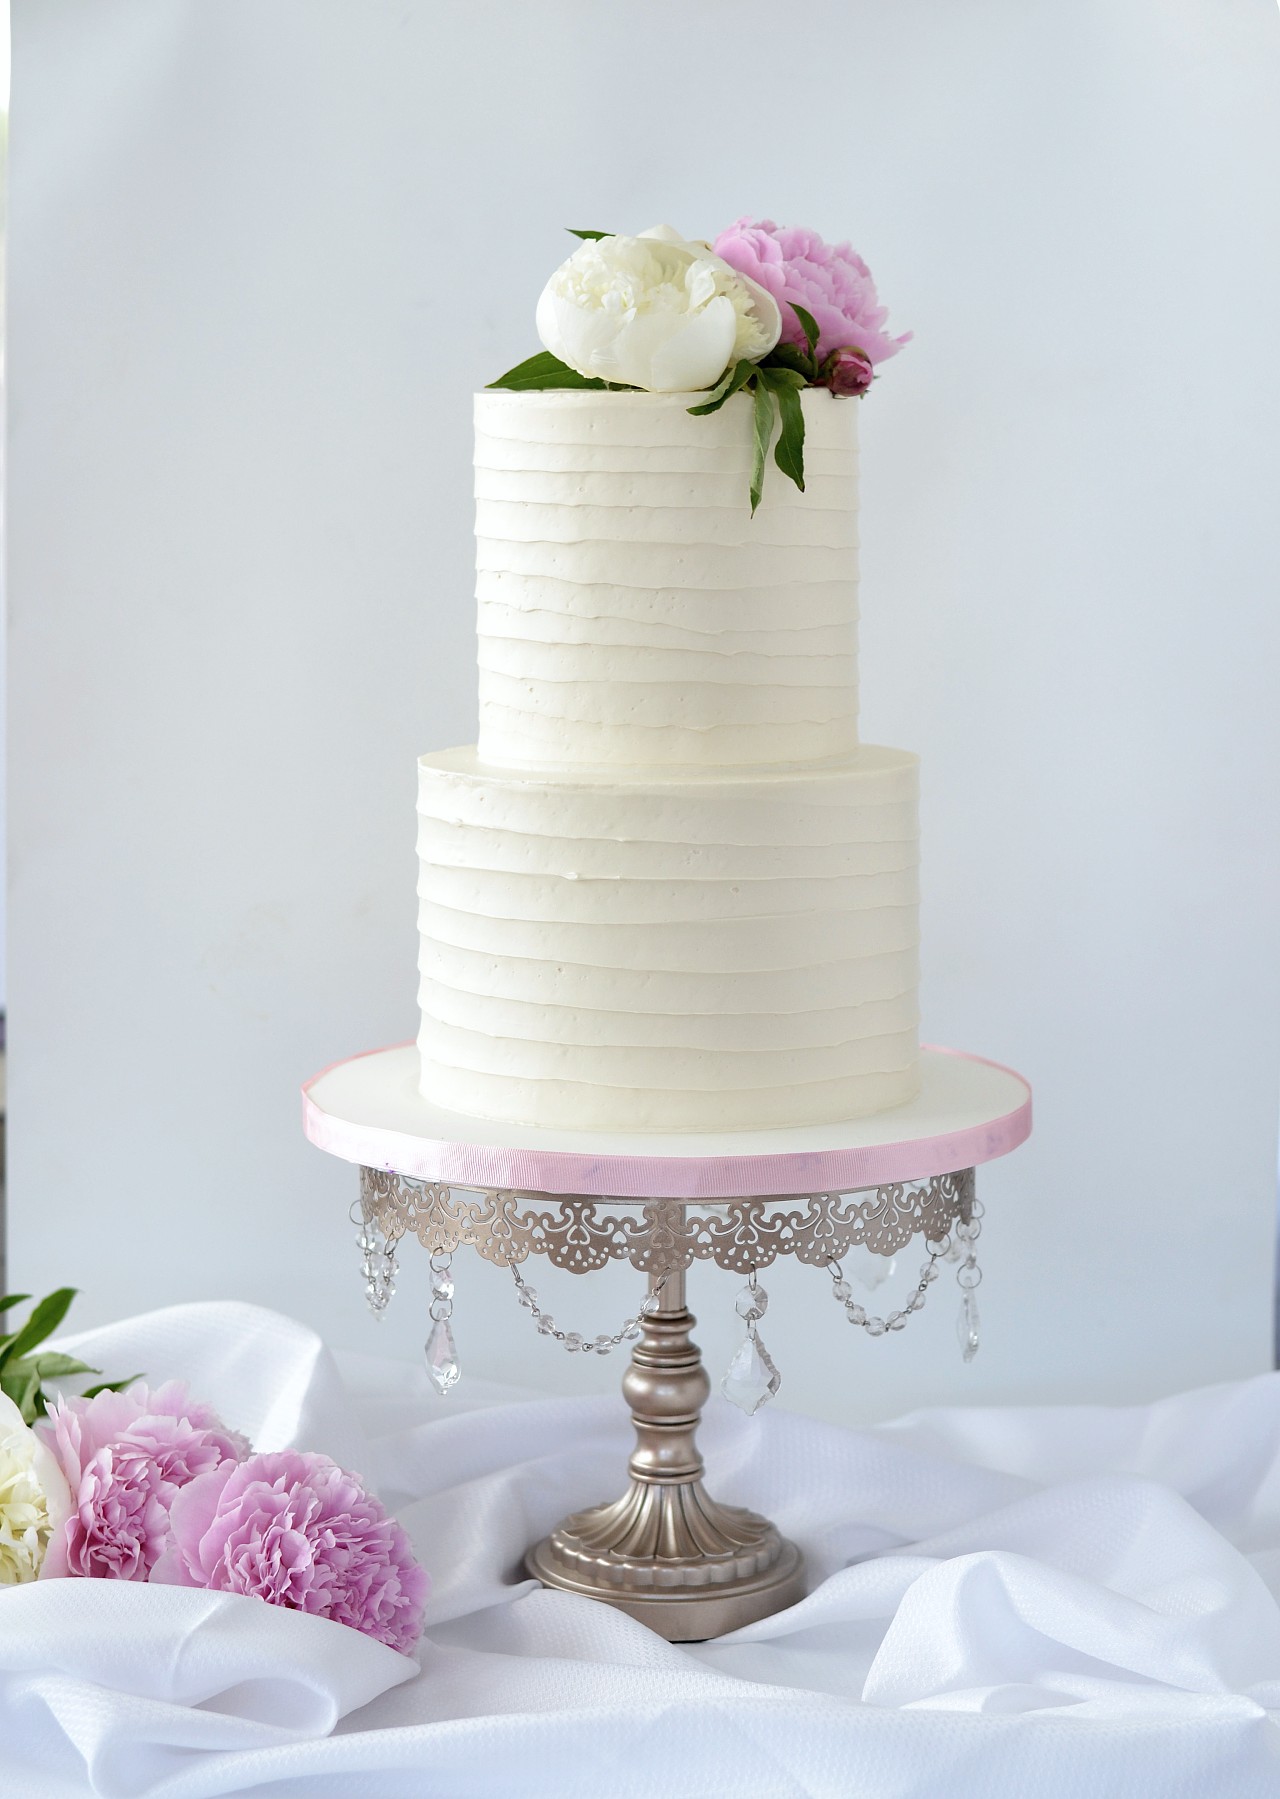 https://oliviarosecakeart.com/wp-content/uploads/2021/01/Simple-buttercream-wedding-cake.jpg